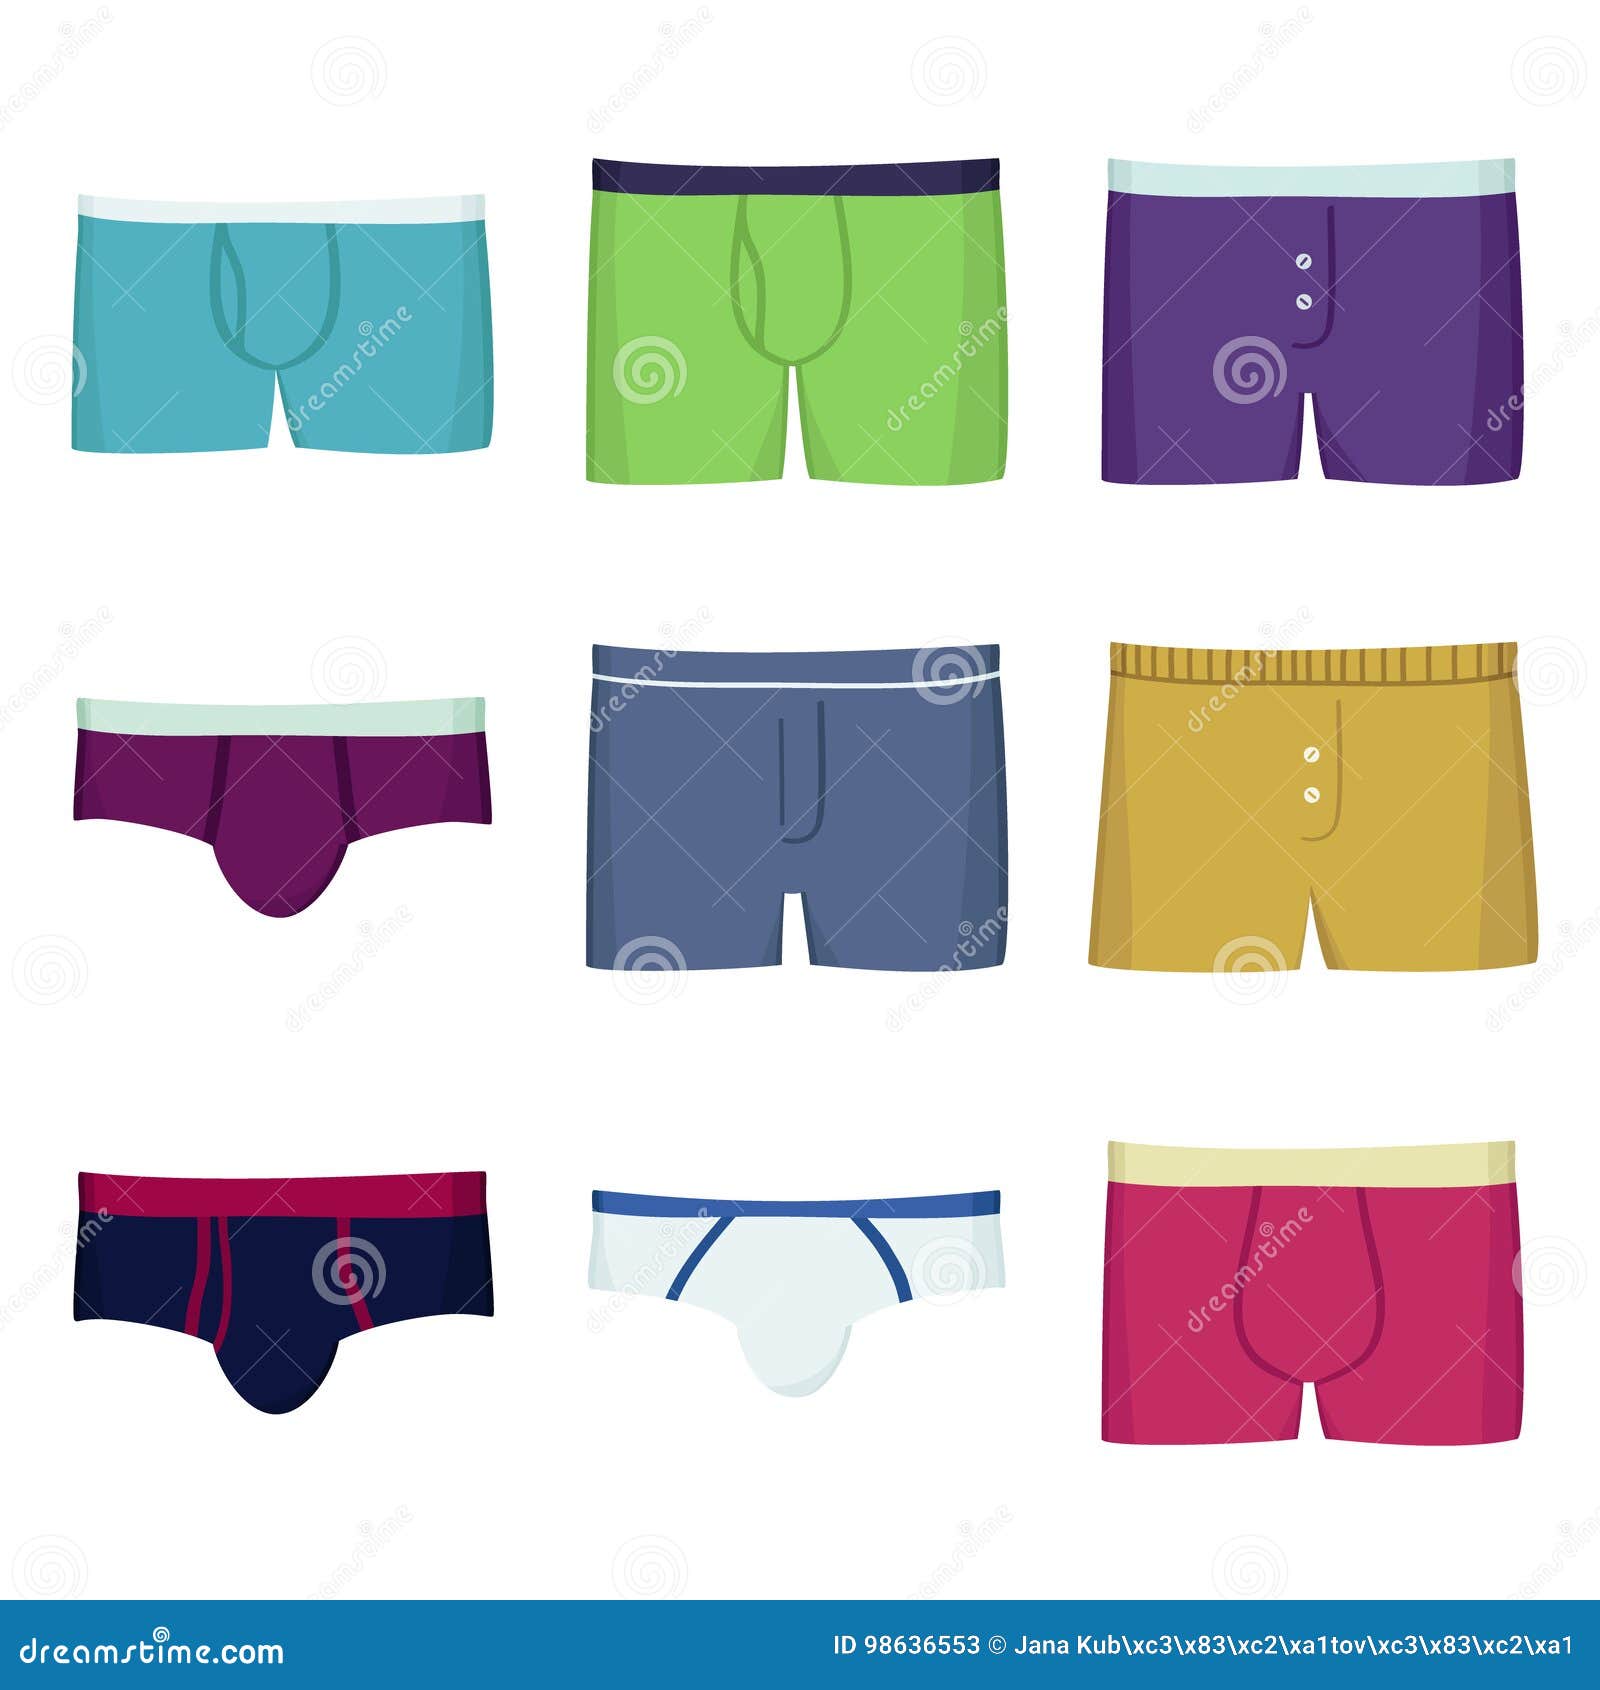 Men's Underwear Vector Stock Illustrations – 242 Men's Underwear Vector ...